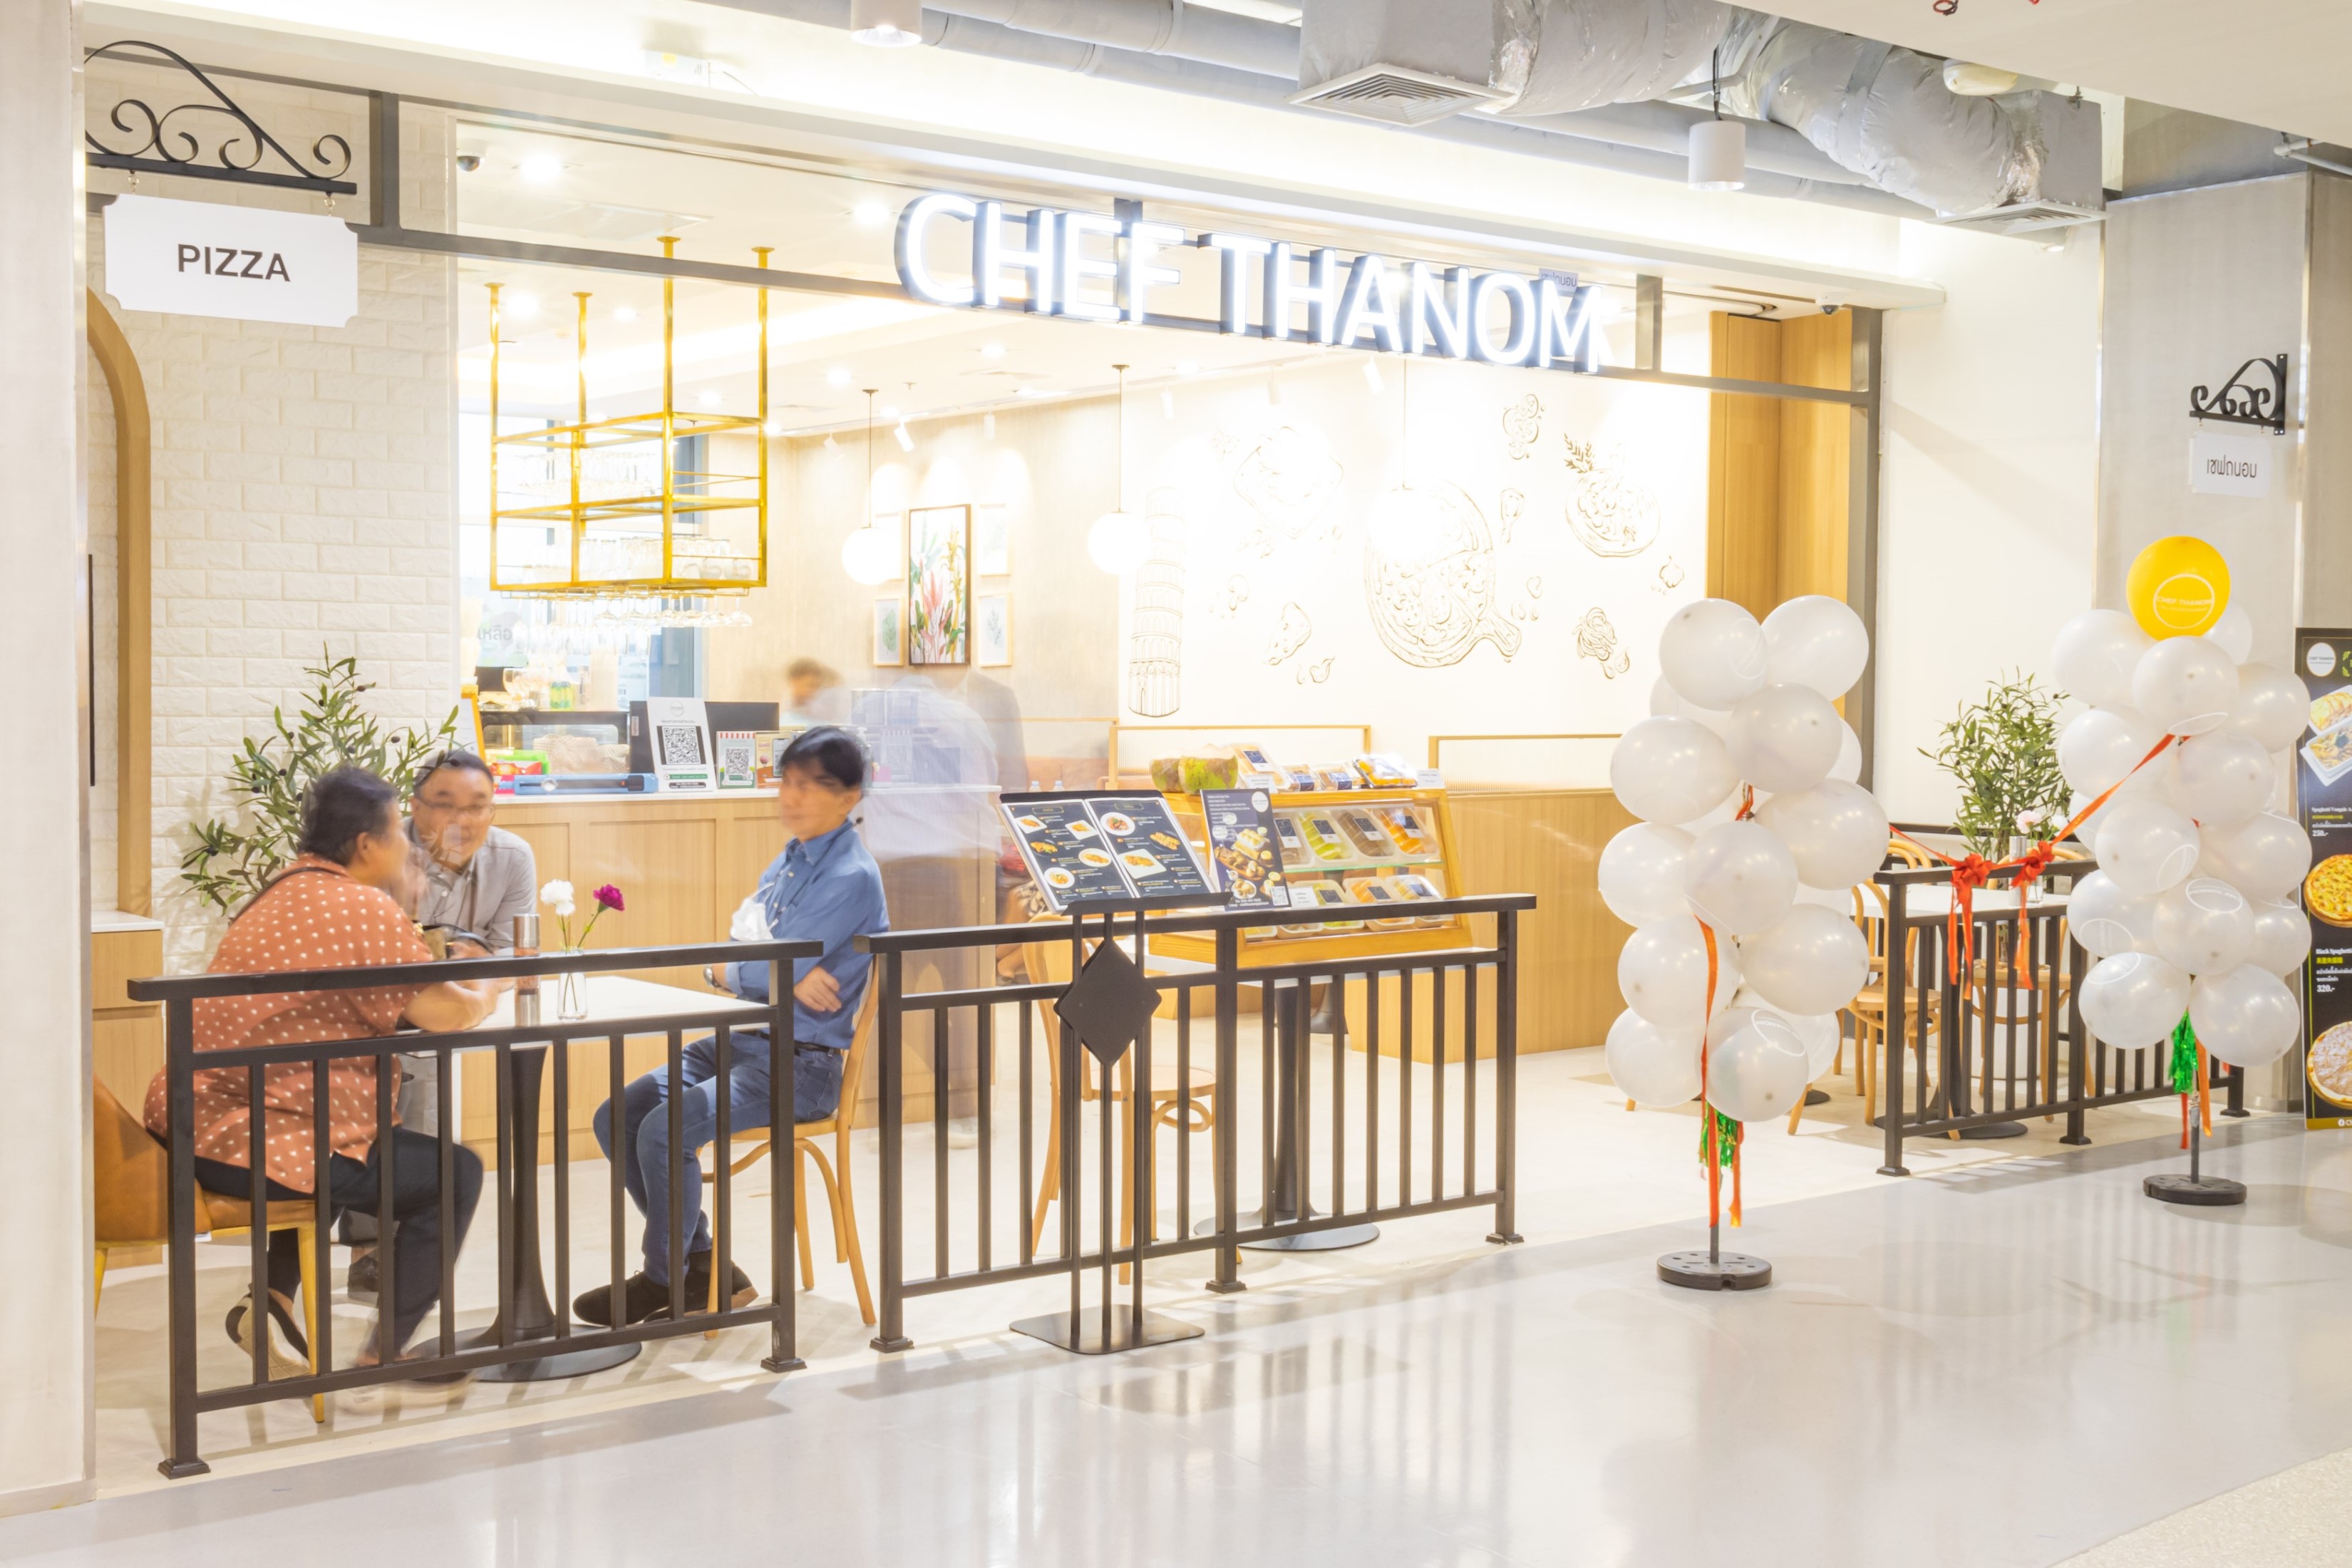 ศูนย์การค้าแพลทินัม แนะนำร้านอาหารใหม่ “CHEFF THANOM” สไตล์อิตาเลียน  เข้มข้นถึงรสแบบไทยๆ  